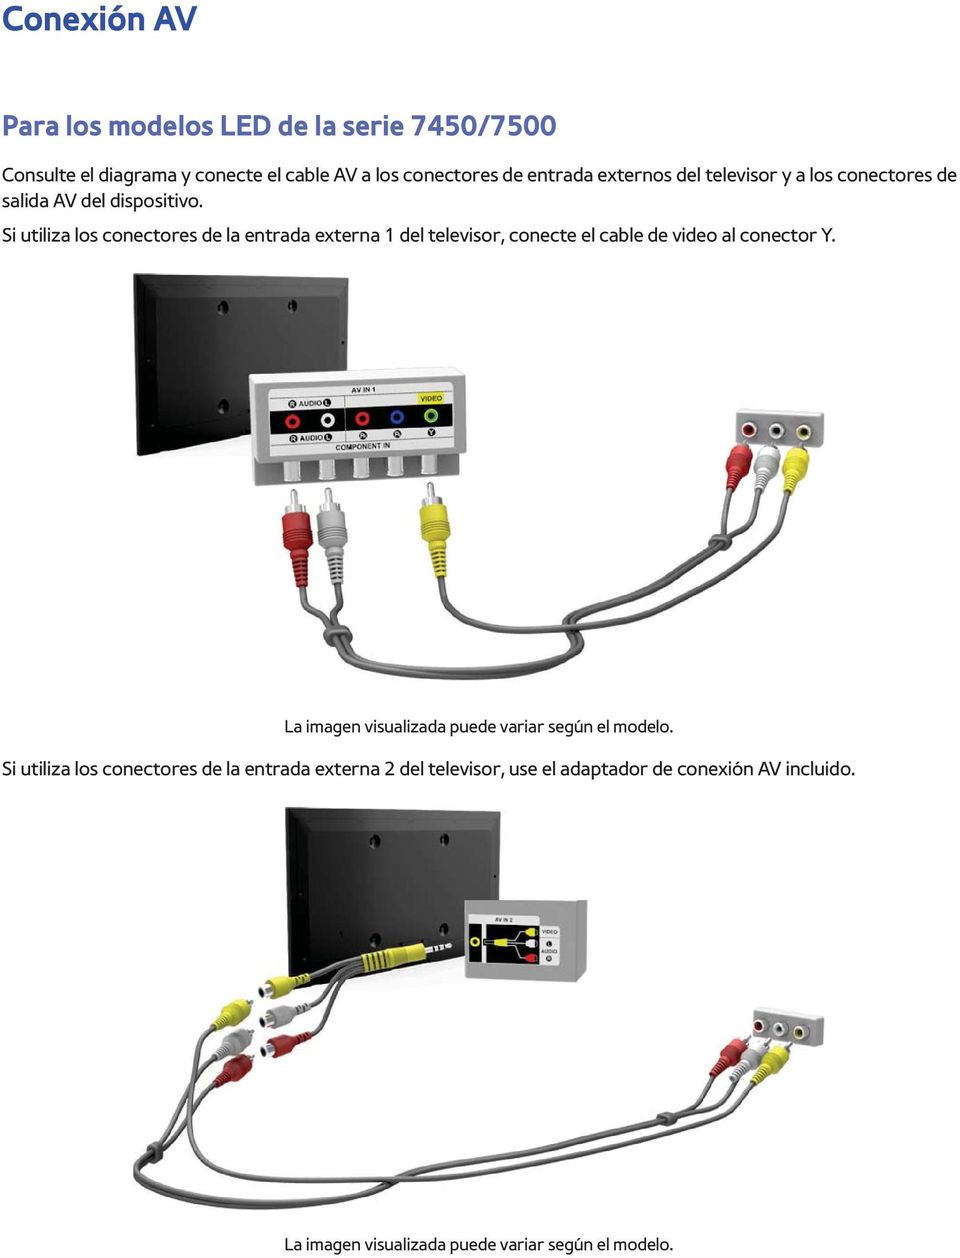 Si utiliza los conectores de la entrada externa 1 del televisor, conecte el cable de video al conector Y.